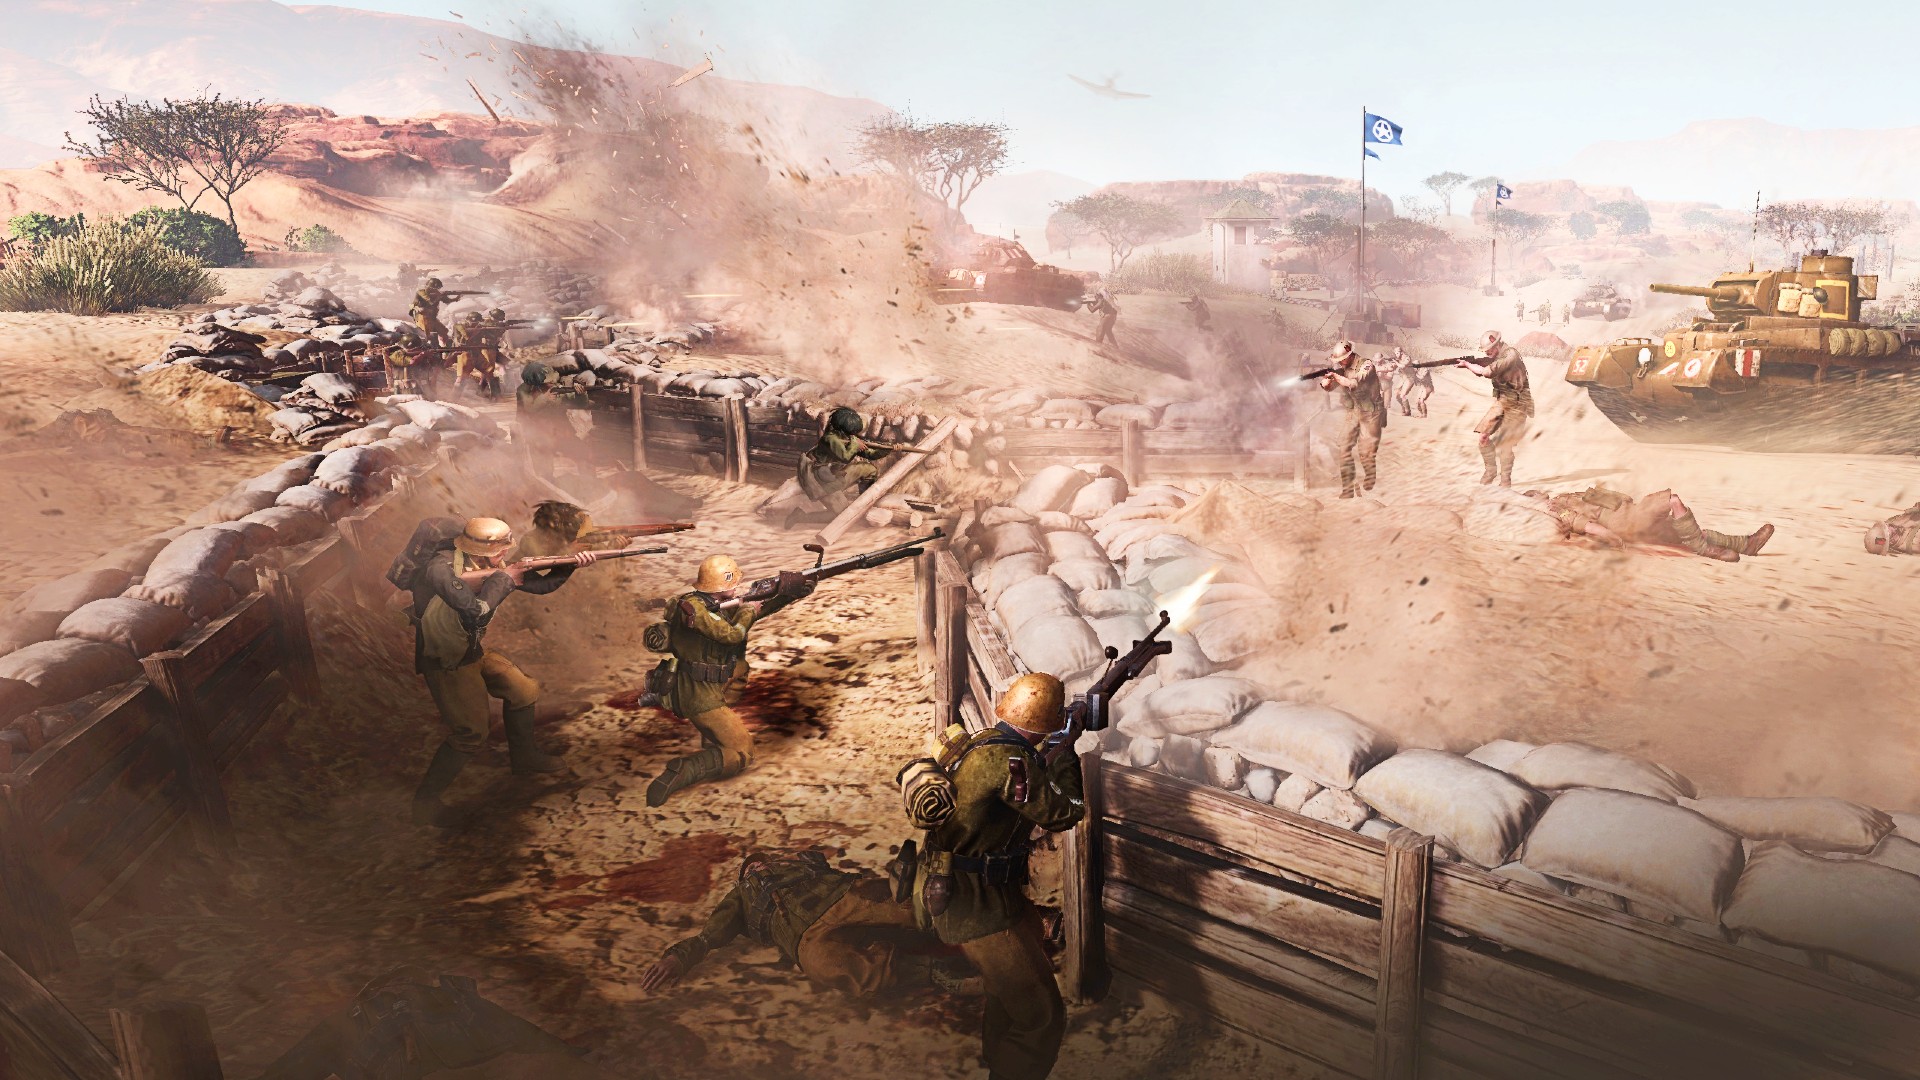 Войските от епохата на Втората световна война се бият в окопи в Северна Африка в компания на герои 3